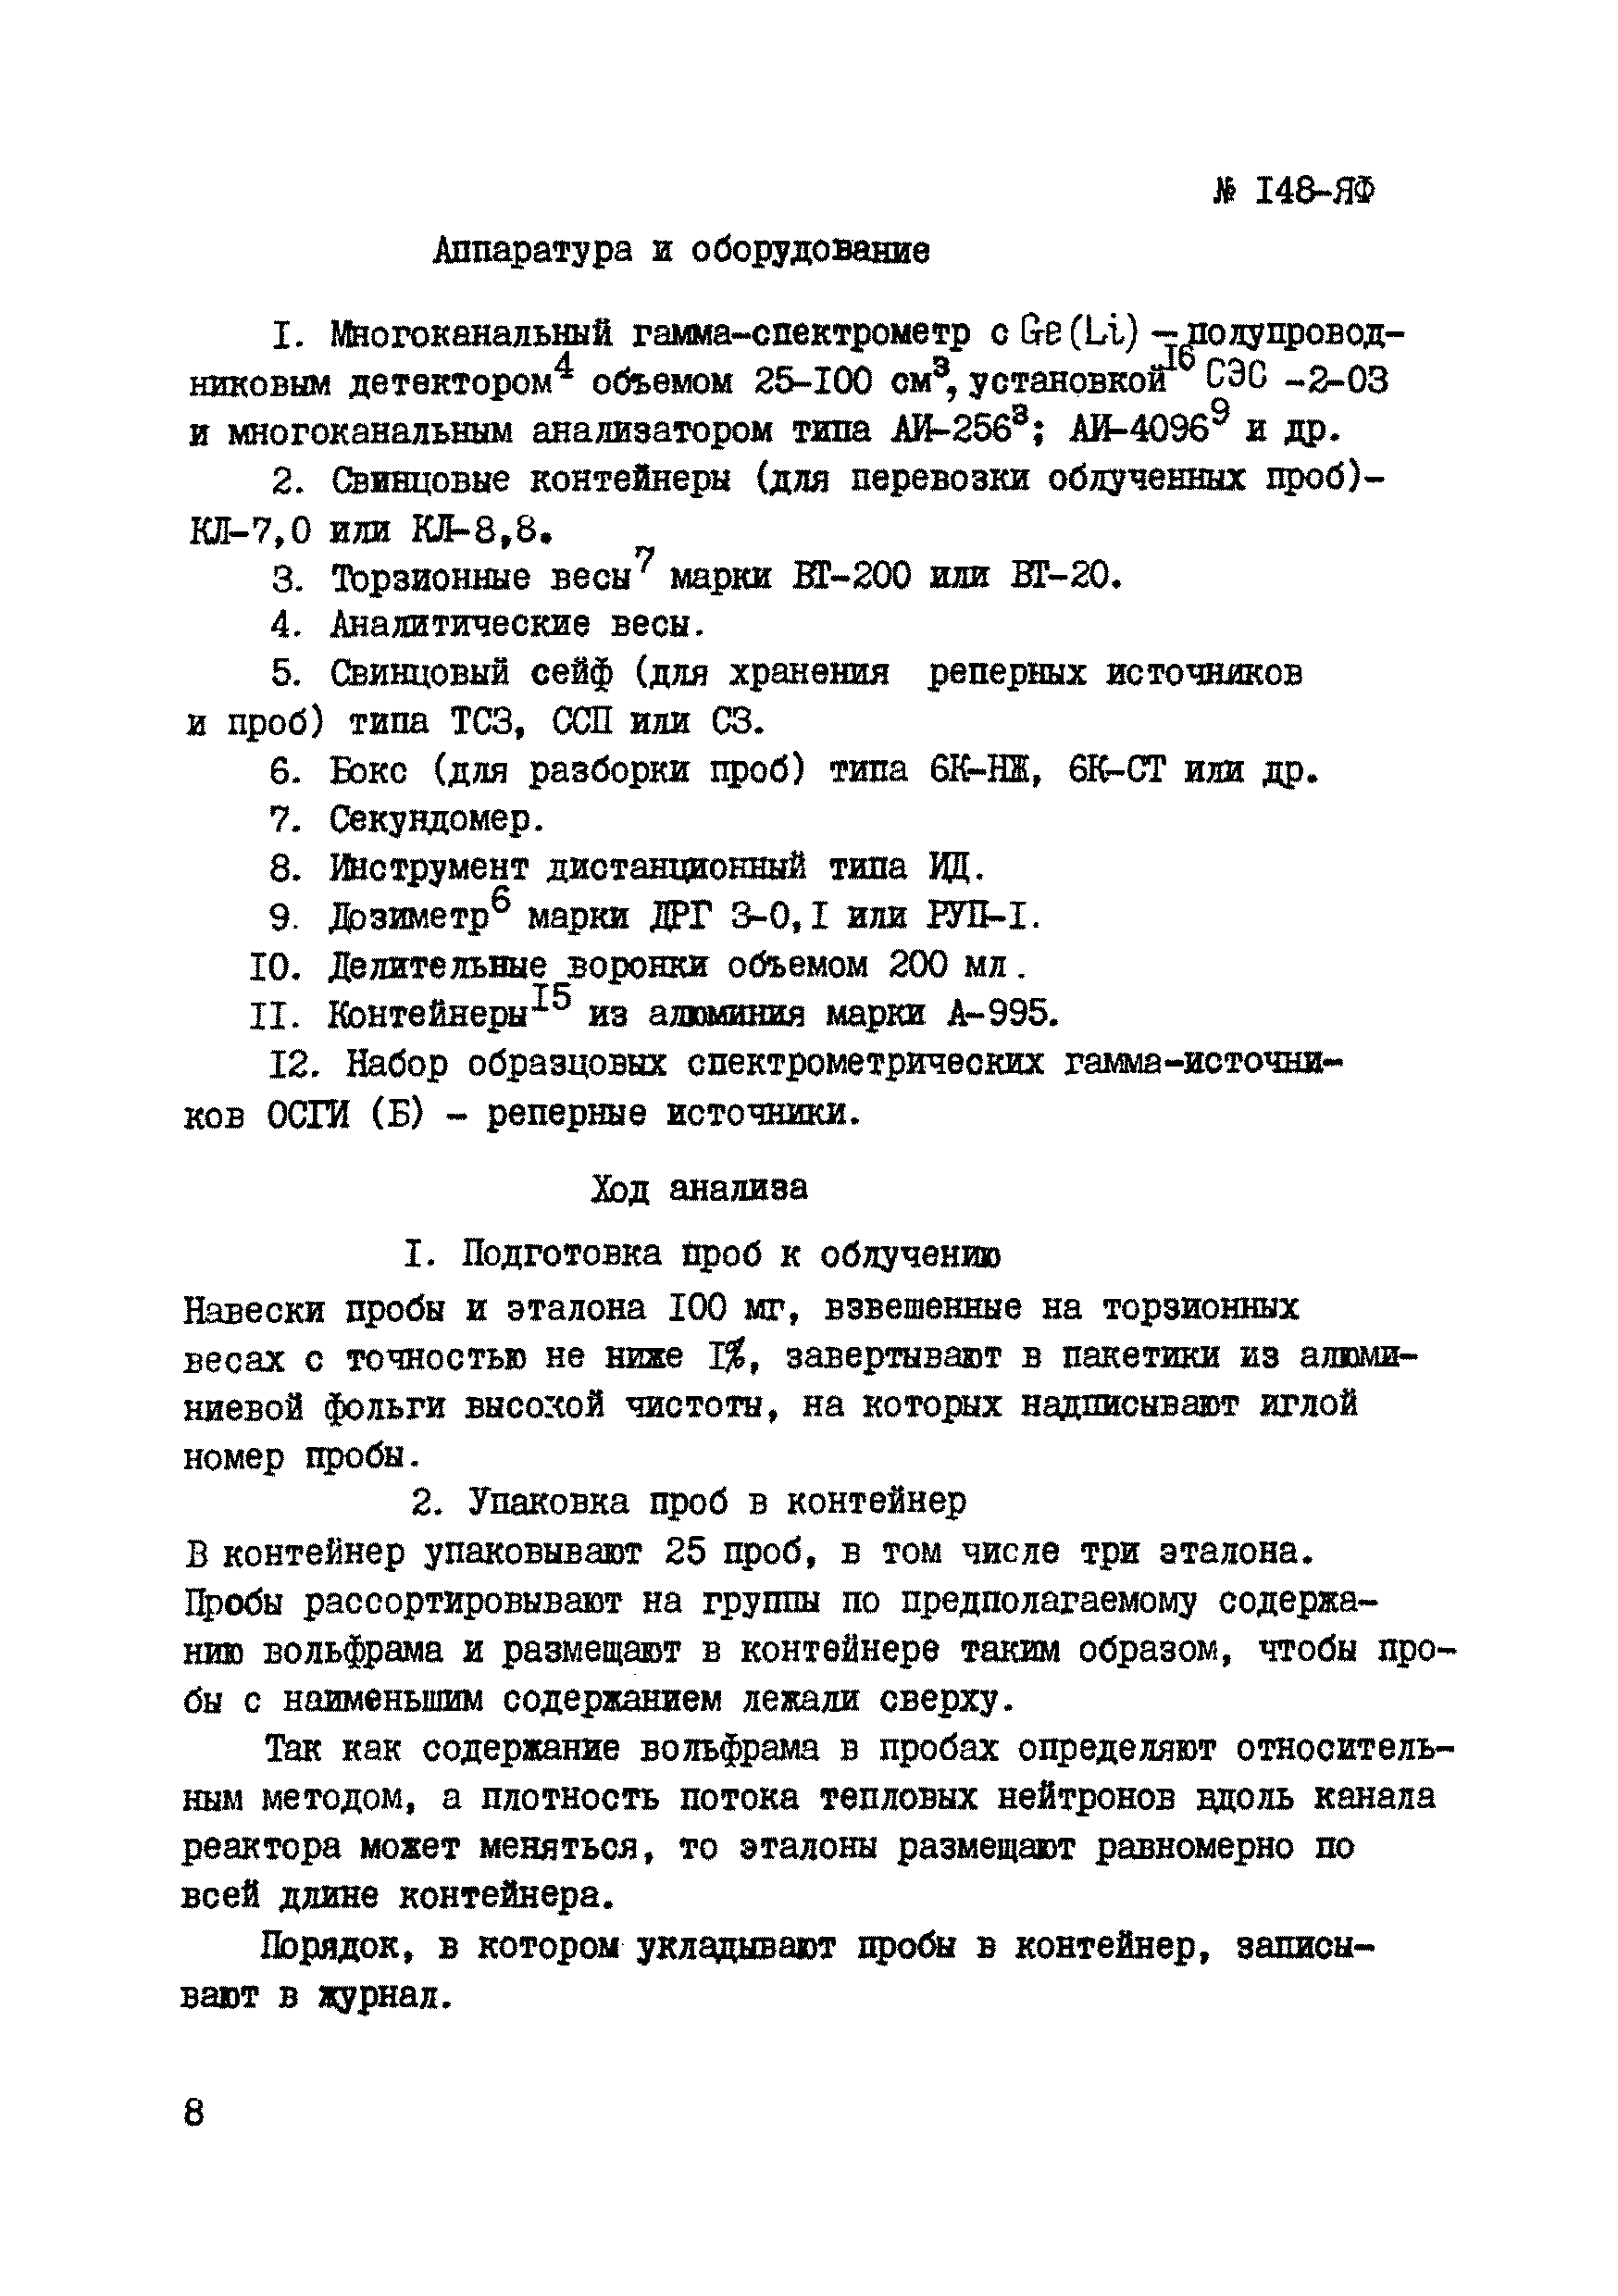 Инструкция НСАМ 148-ЯФ